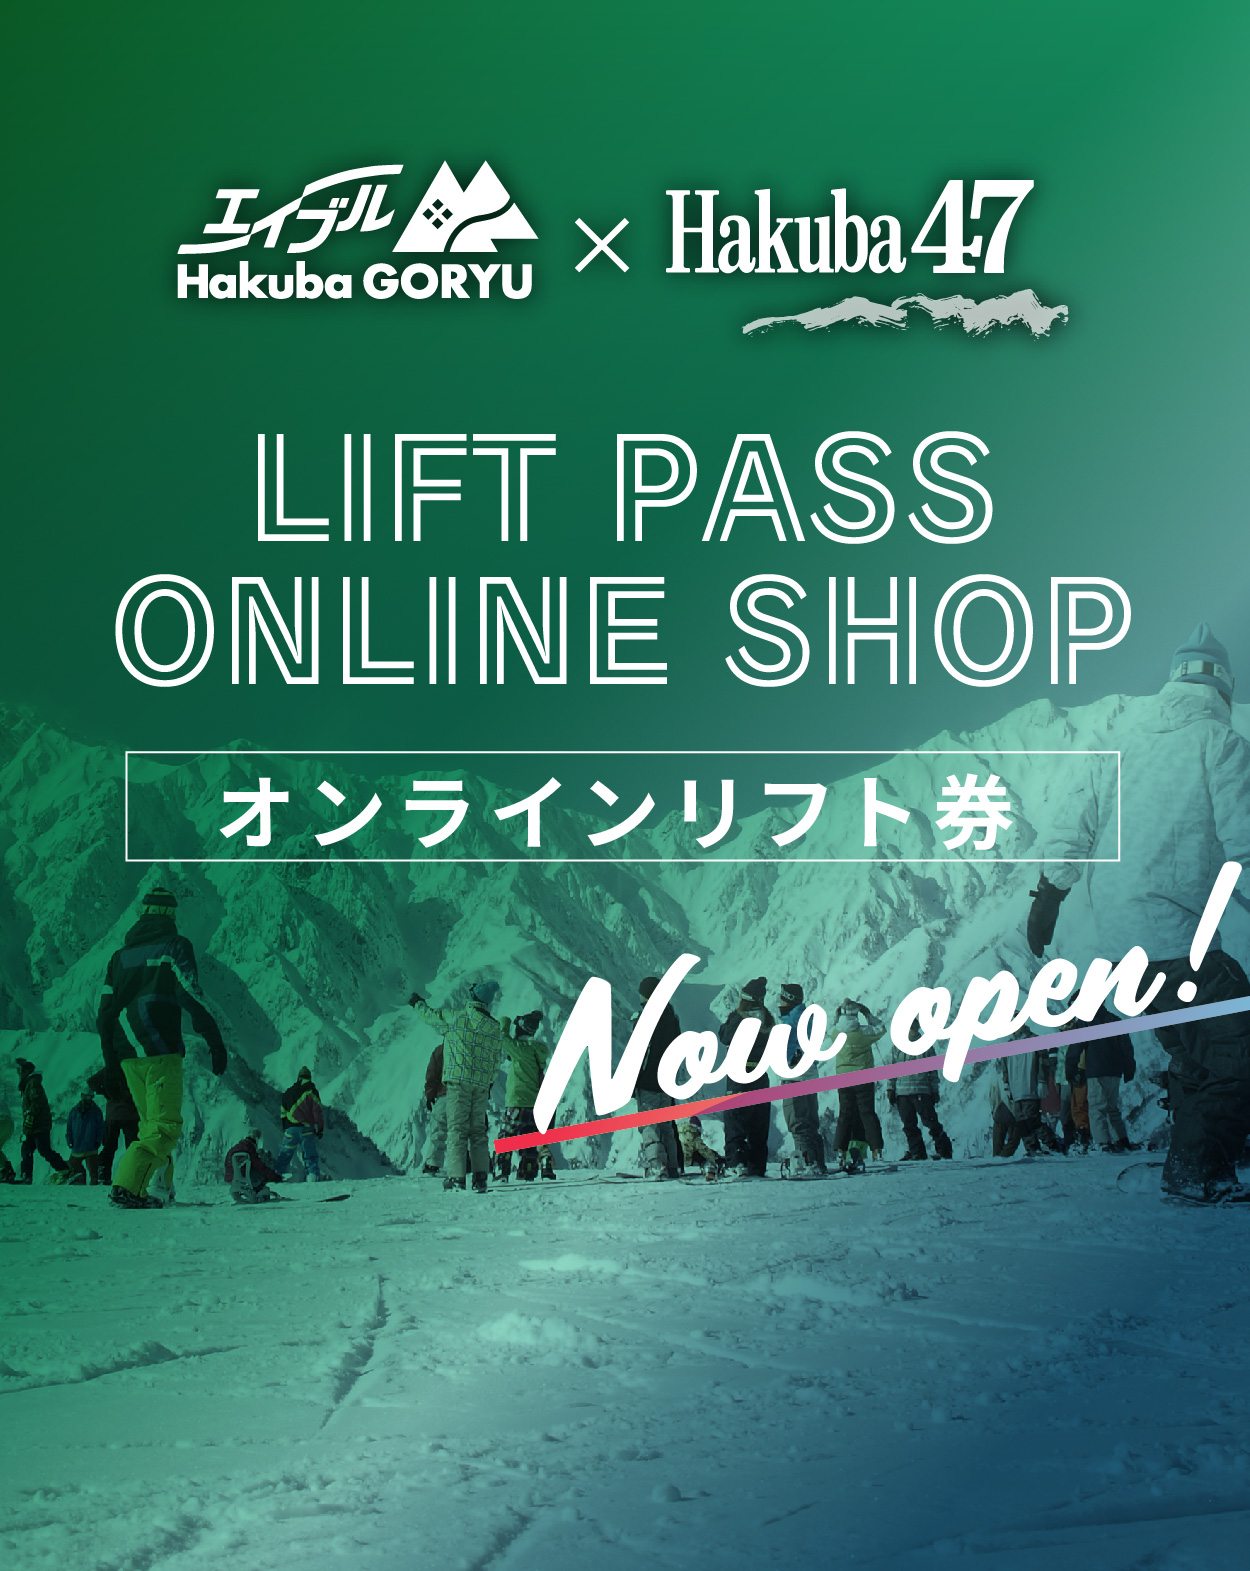 Goryu47 Online Lift Pass Shop